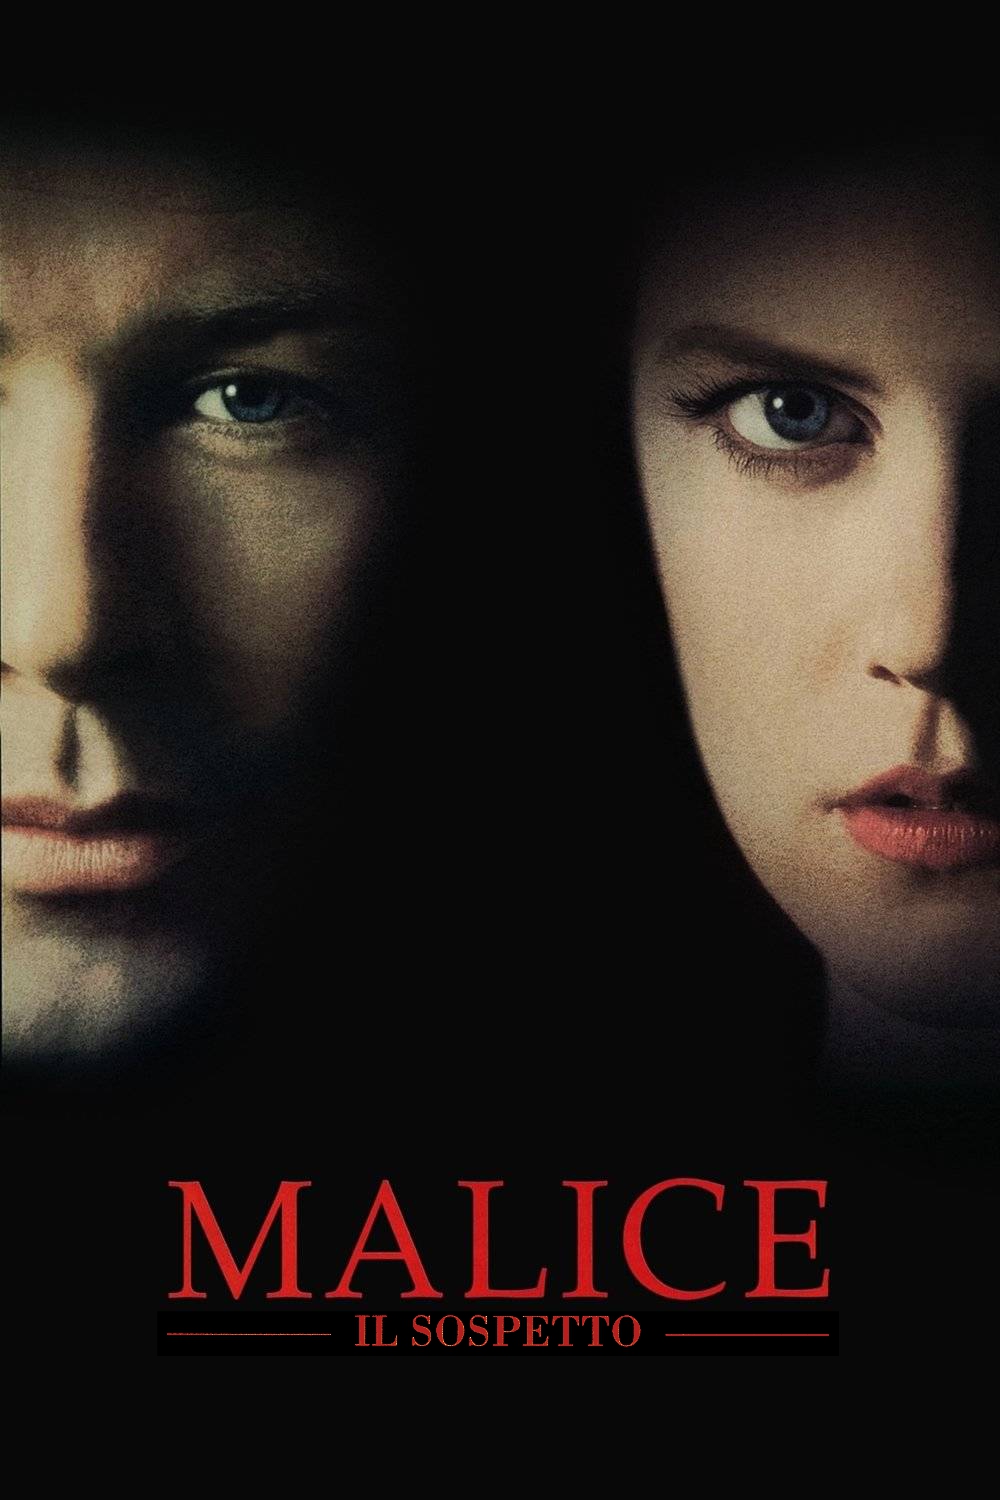 Malice – Il sospetto [HD] (1993)